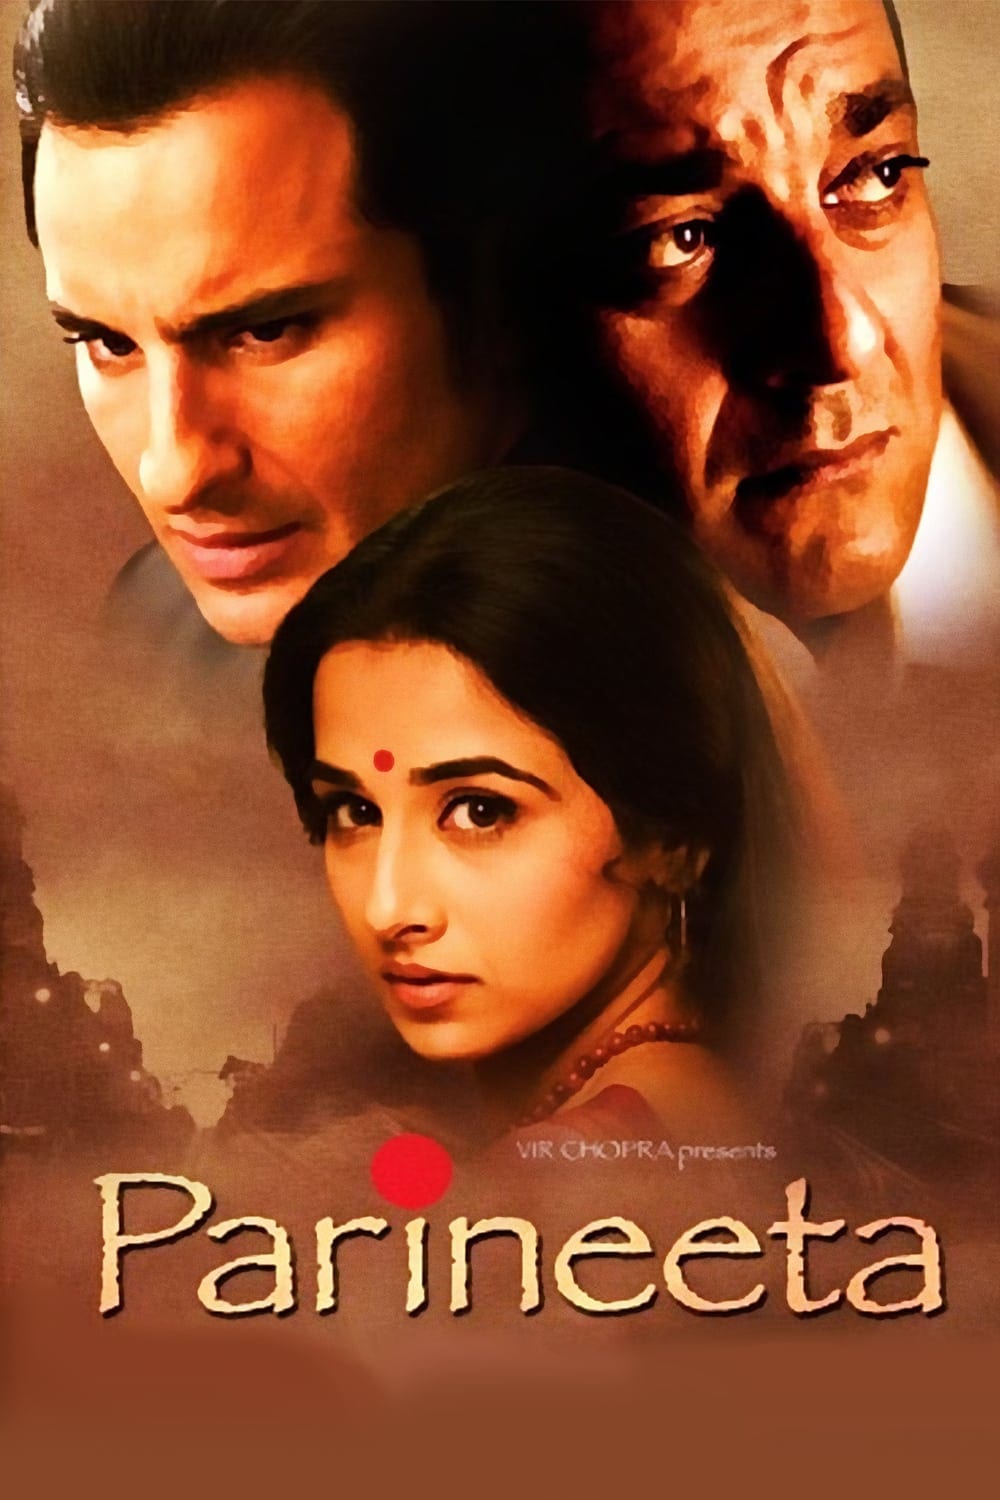 Poster for the movie "Parineeta"